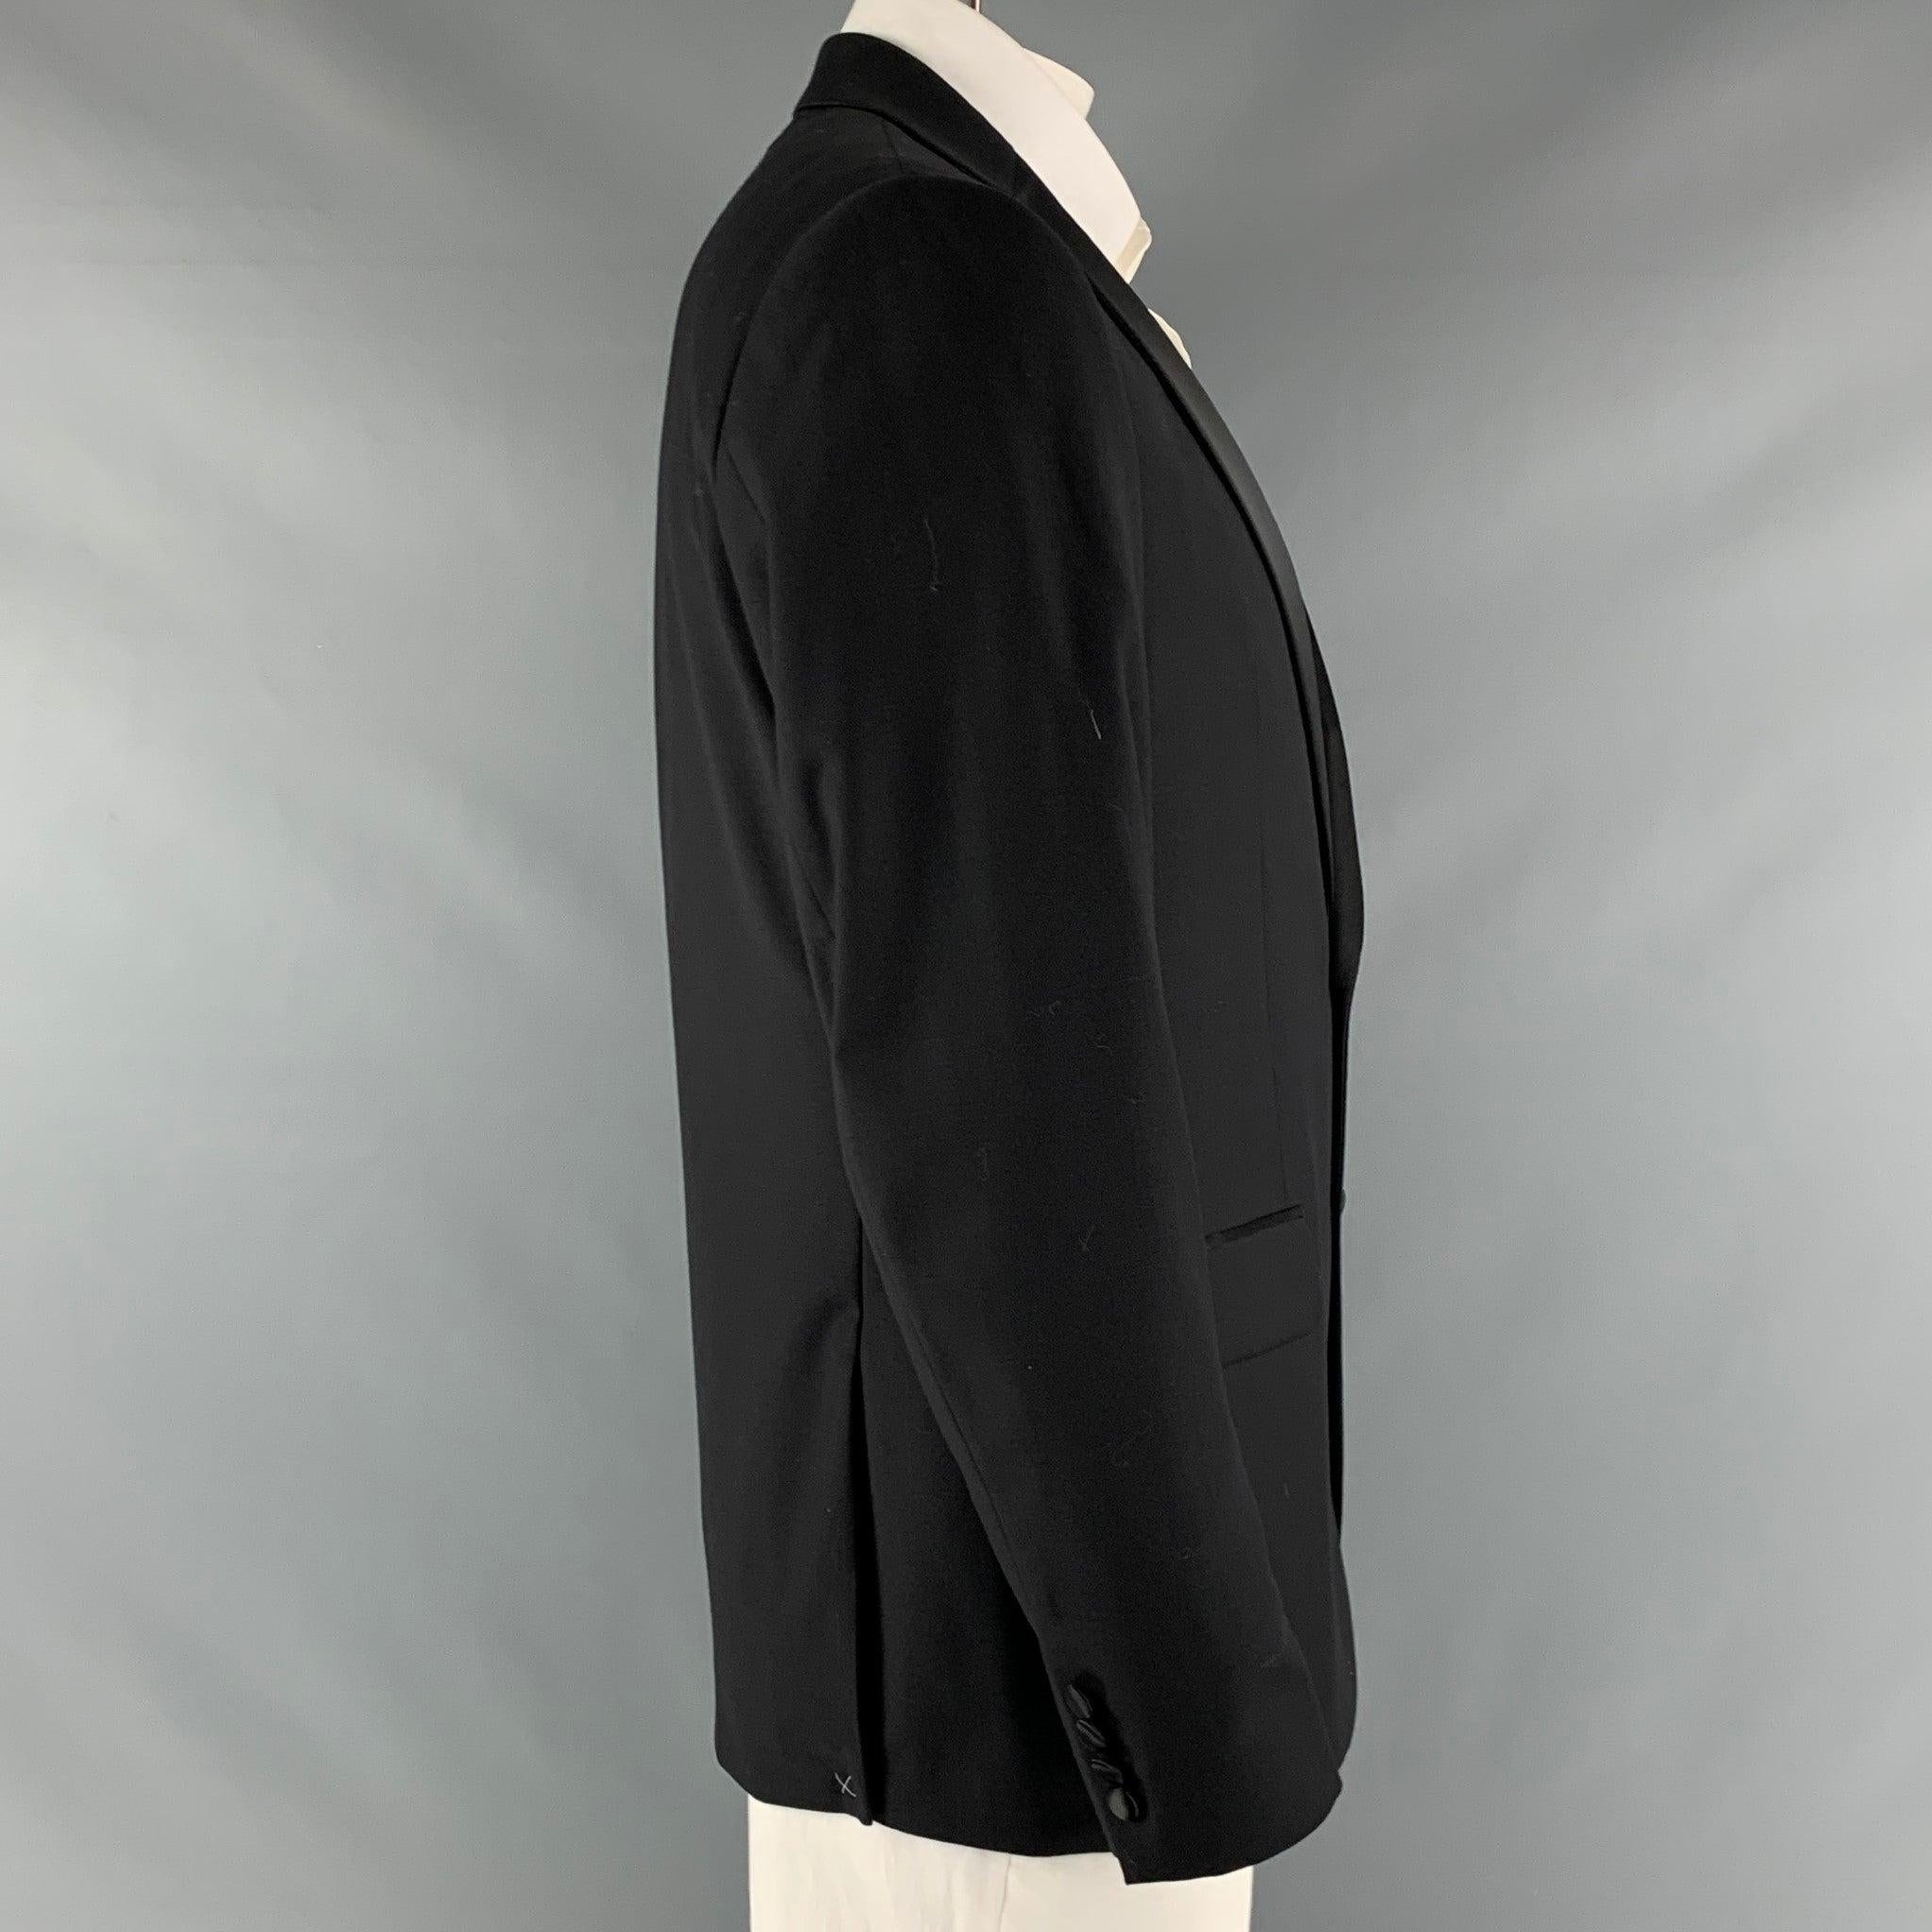 Manteau de sport CALVIN KLEIN x SLIM FIT en laine extensible noire avec doublure complète, simple boutonnage, revers échancré et double fente au dos. Nouveau avec étiquettes. 

Marqué :   42 R 

Mesures : 
 
Épaule : 18.5 pouces Poitrine : 42 pouces